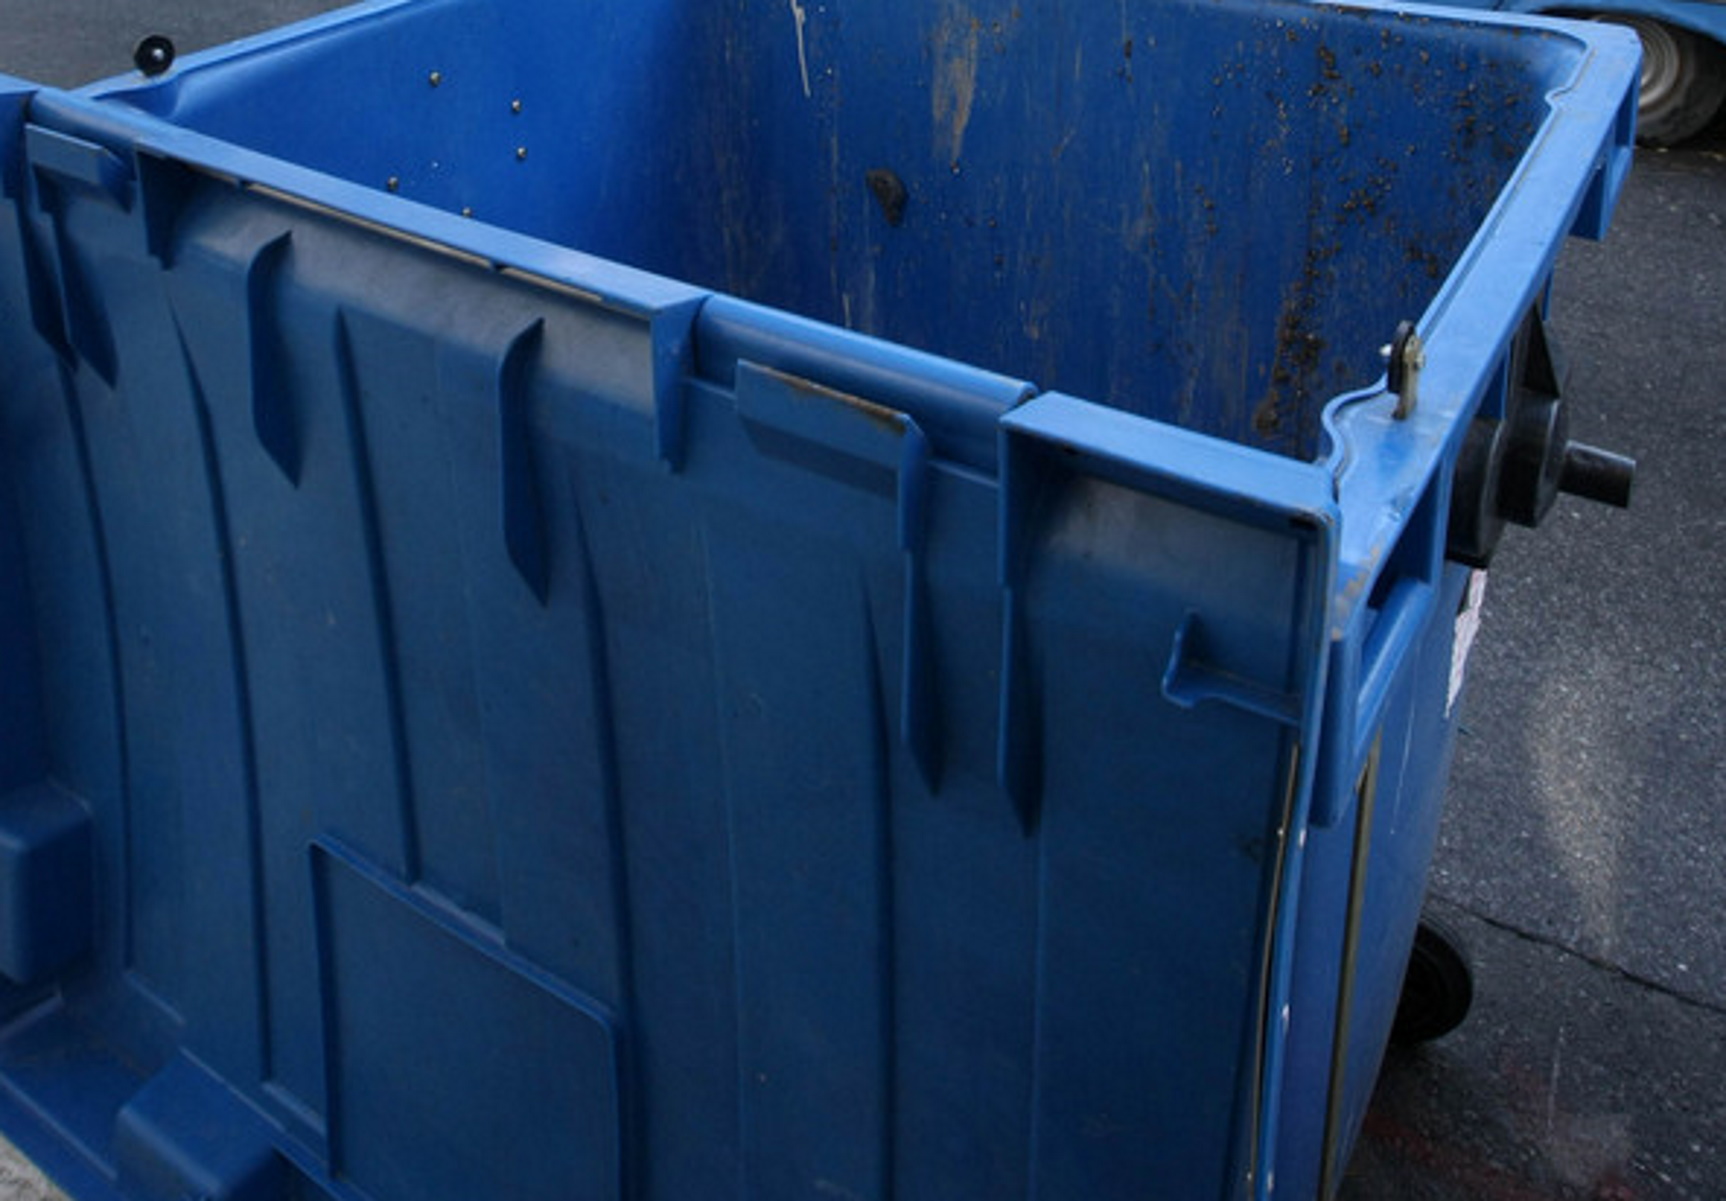 Βόλος: Μητέρα έριξε το παιδάκι της σε κάδο ανακύκλωσης ρούχων για να τα πάρει – Καταγγελία που σοκάρει